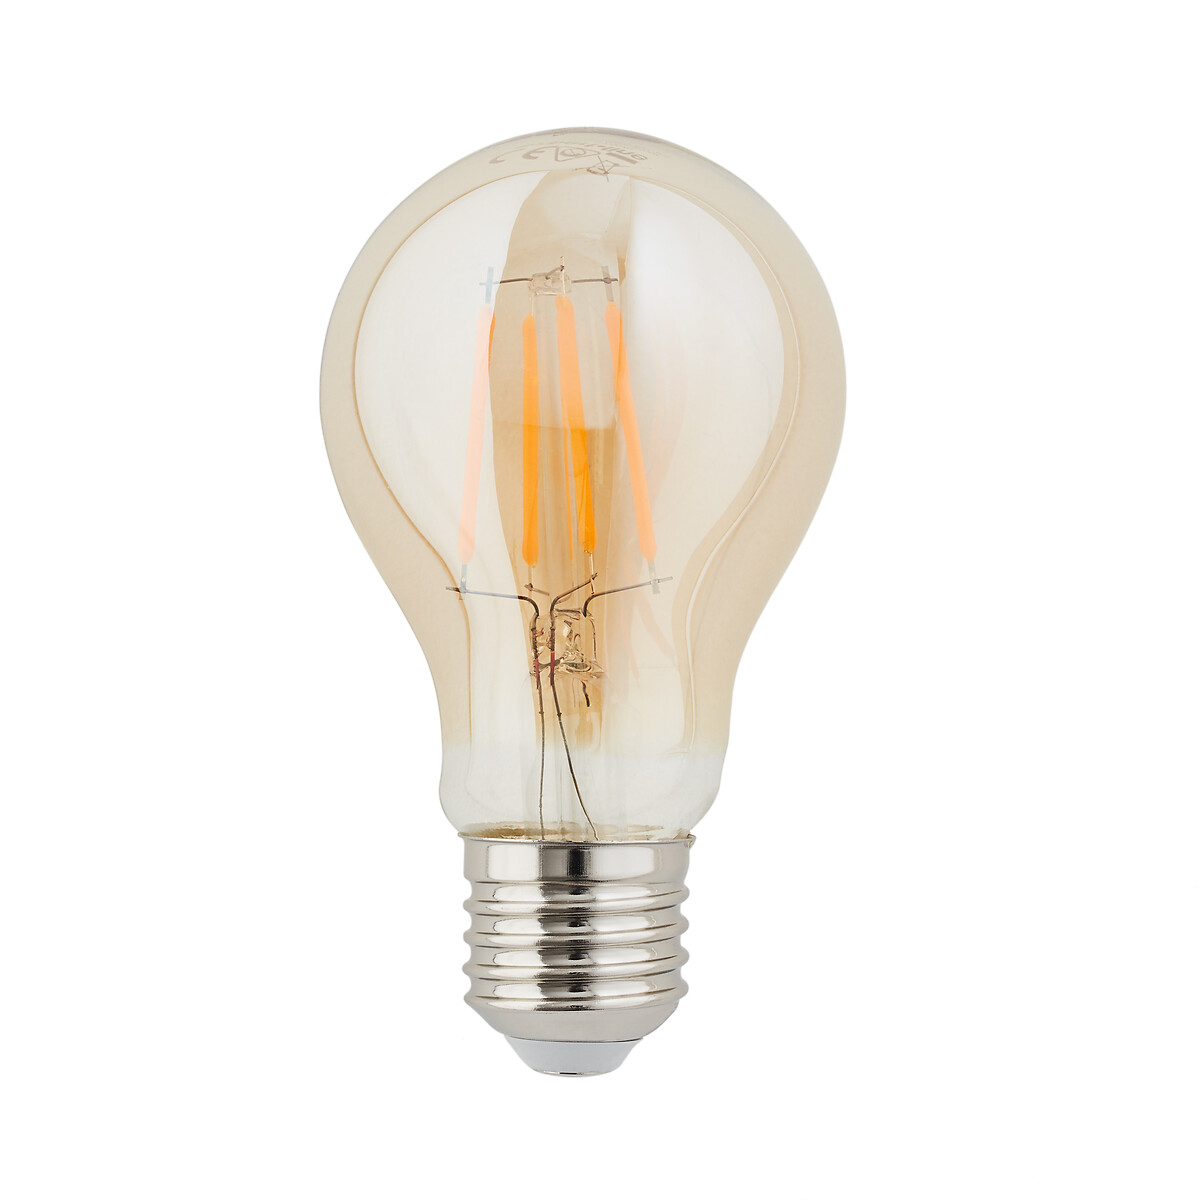 LED-Lampe Baulind, bernsteinfarben, Ø 6 cm von LA REDOUTE INTERIEURS